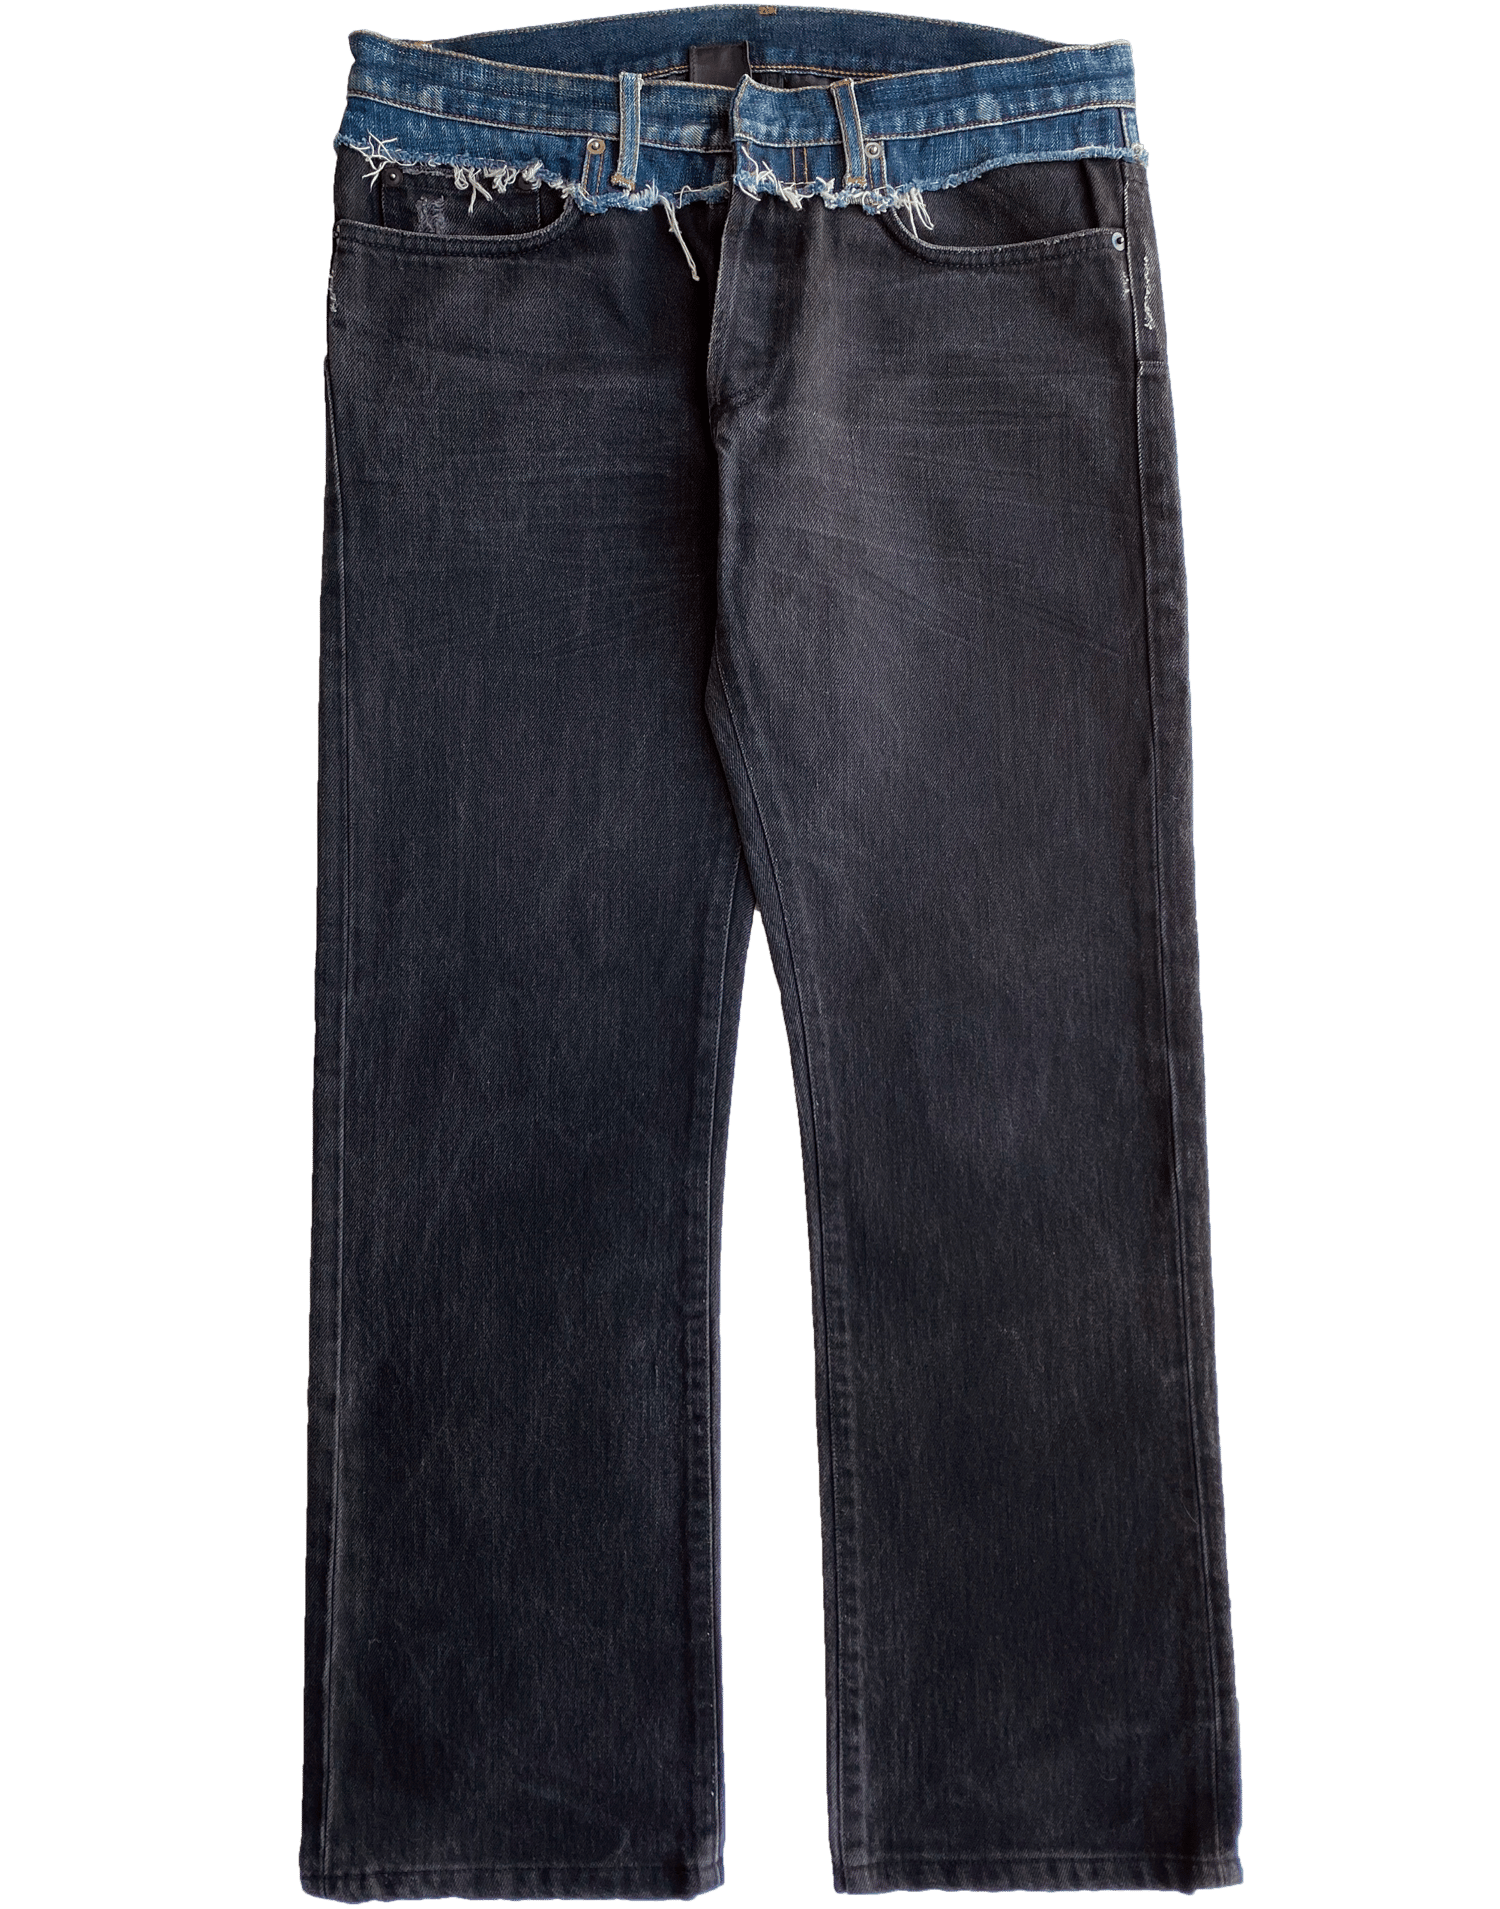 06 Dior Homme Cummerbund Jeans